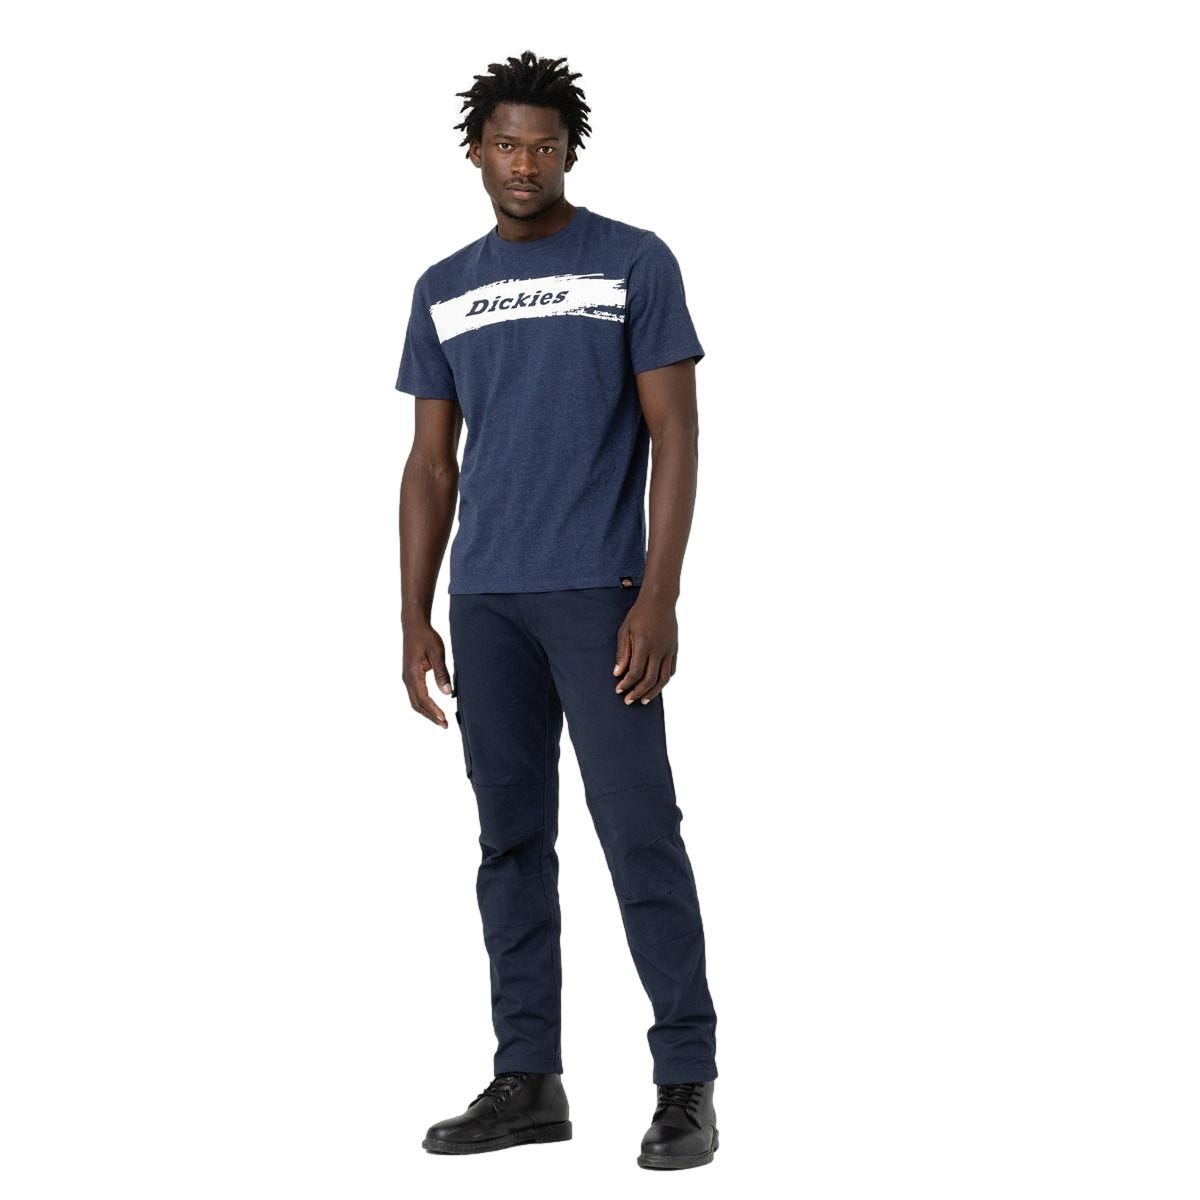 T-shirt à manches courtes pour homme Stanton bleu marine - Dickies - Taille L 2